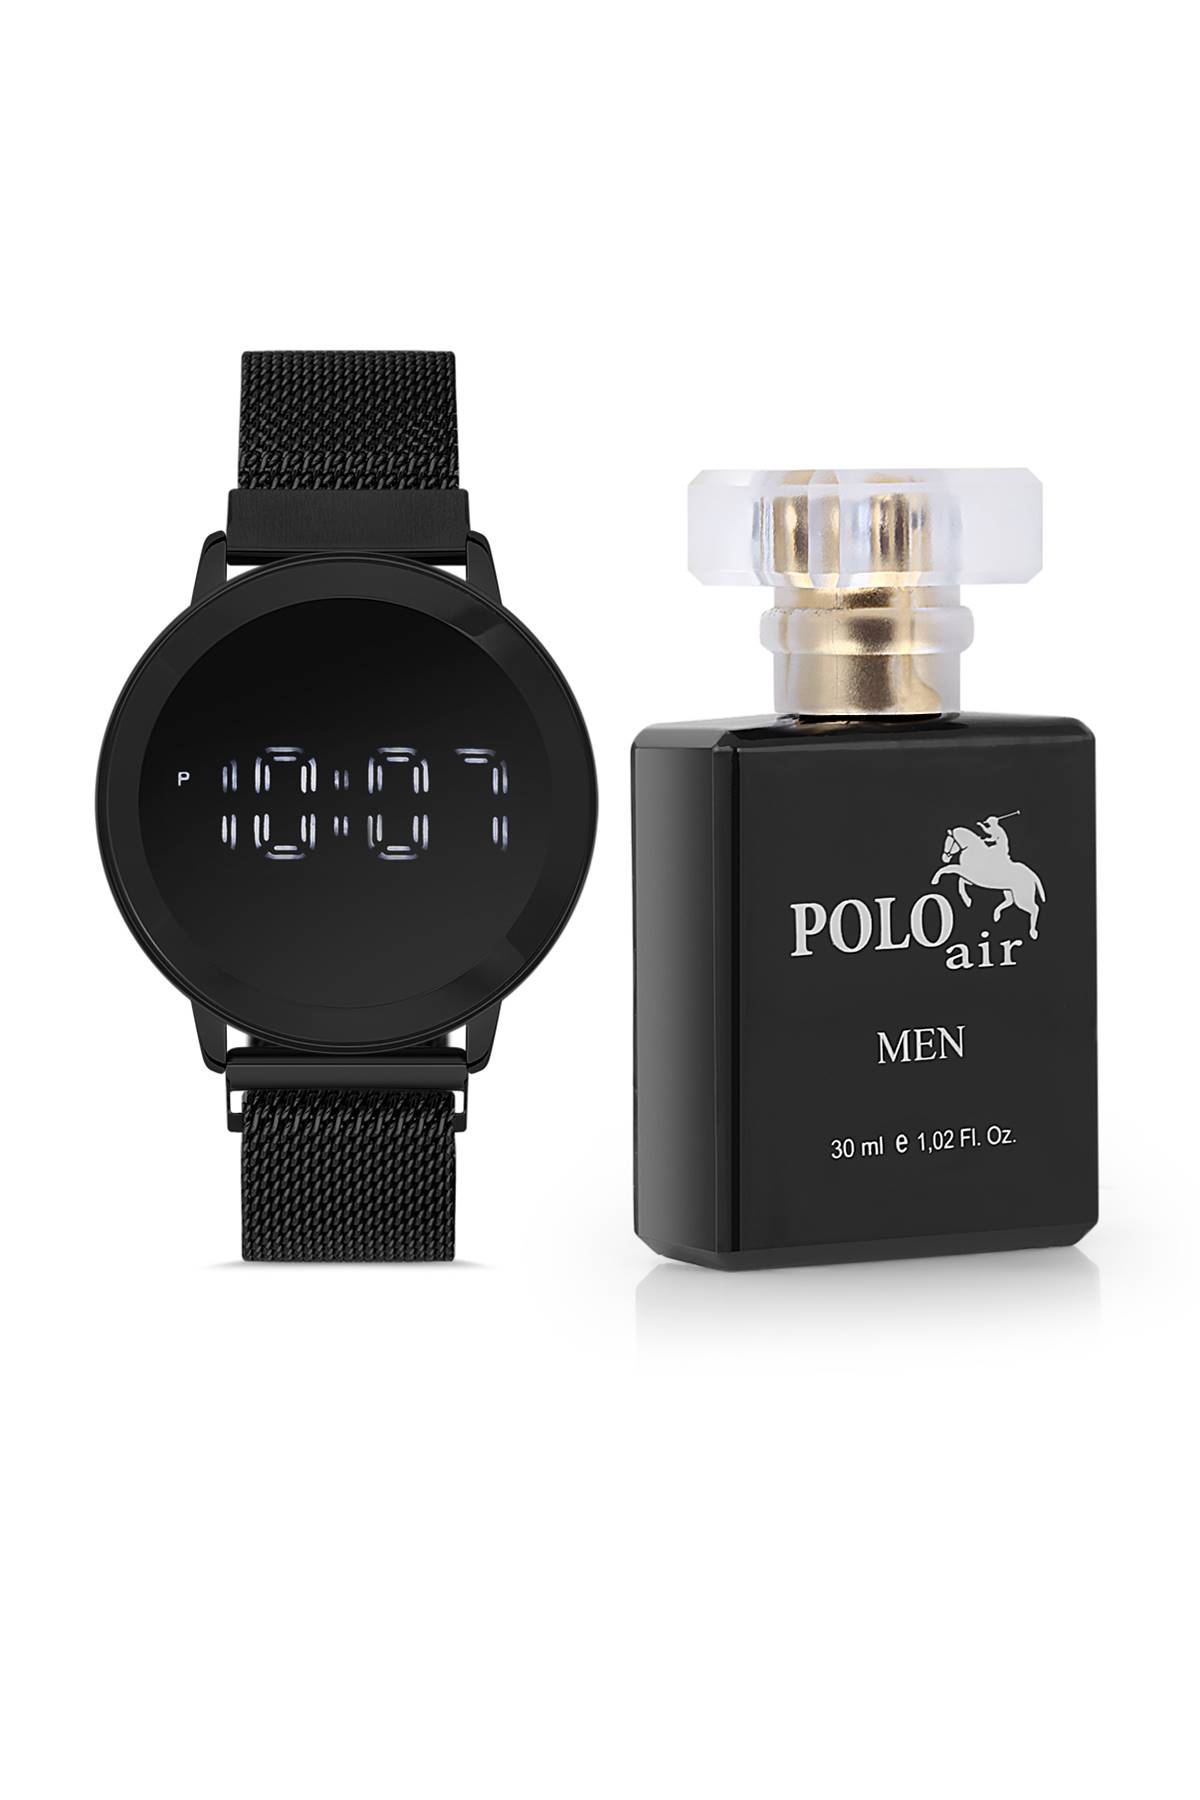 Polo Air Erkek Kutulu Parfüm Kol Saati Seti Hediye Paketinde pl-0475E3